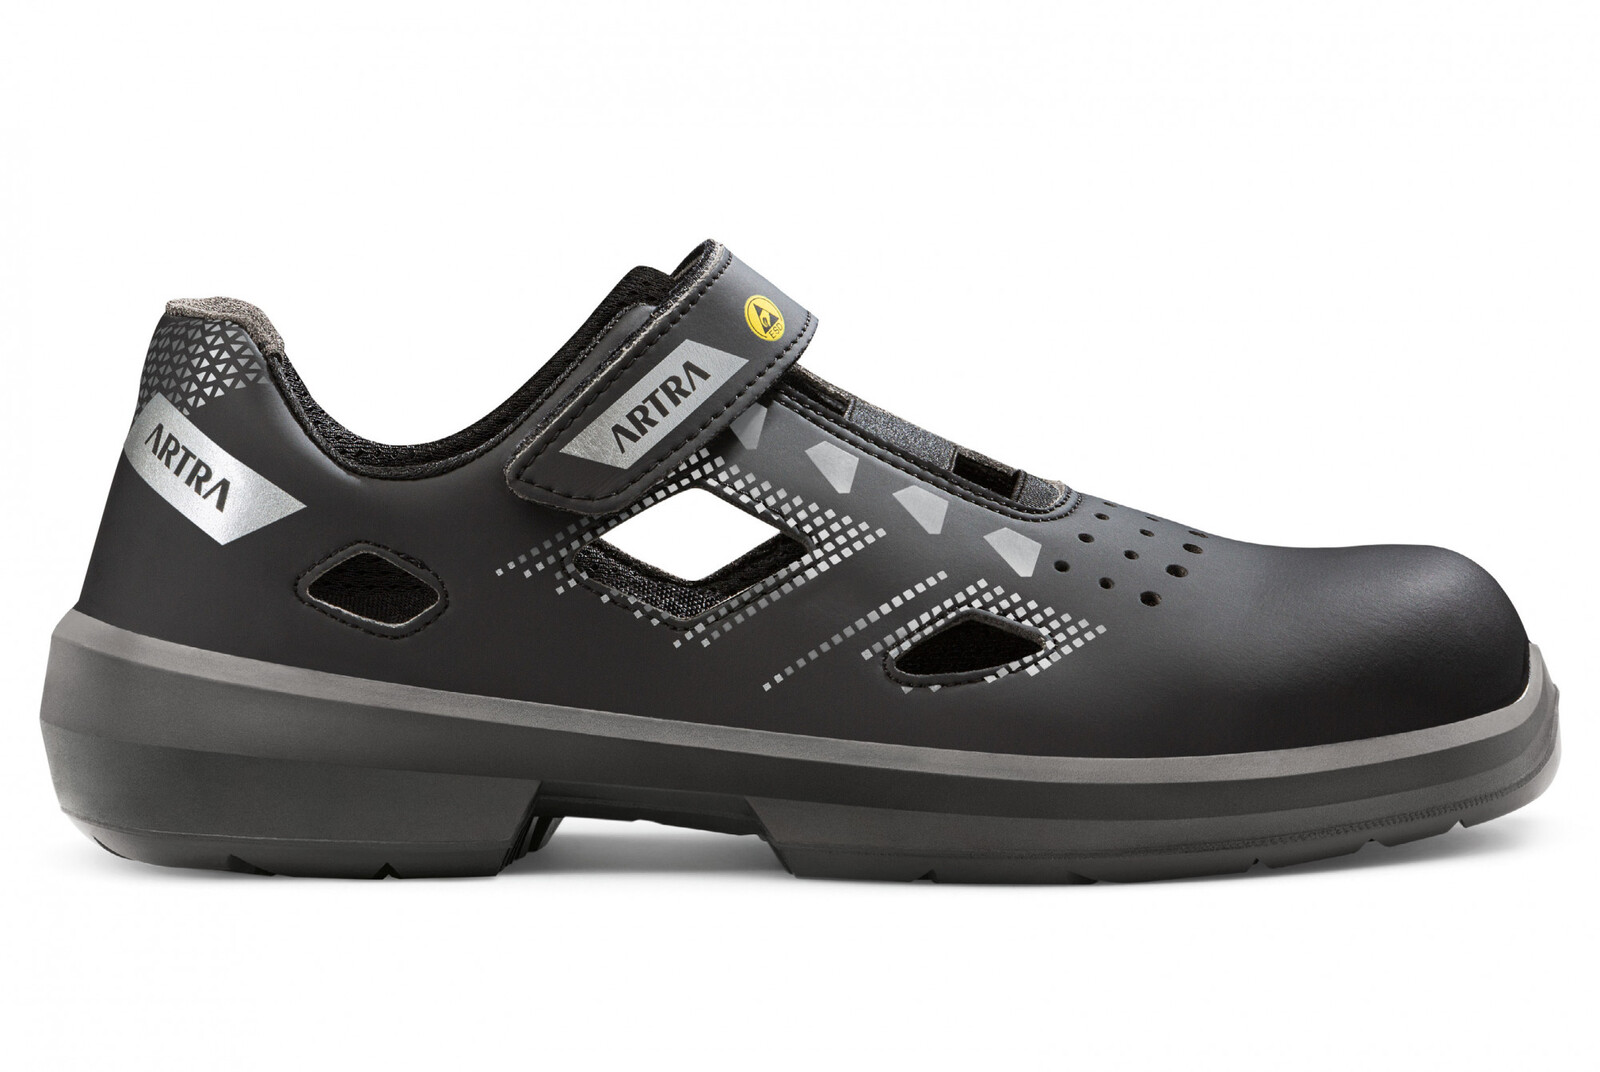 Bezpečnostné sandále Artra Arzo 805 676560 S1P SRC ESD MF - veľkosť: 46, farba: čierna/sivá